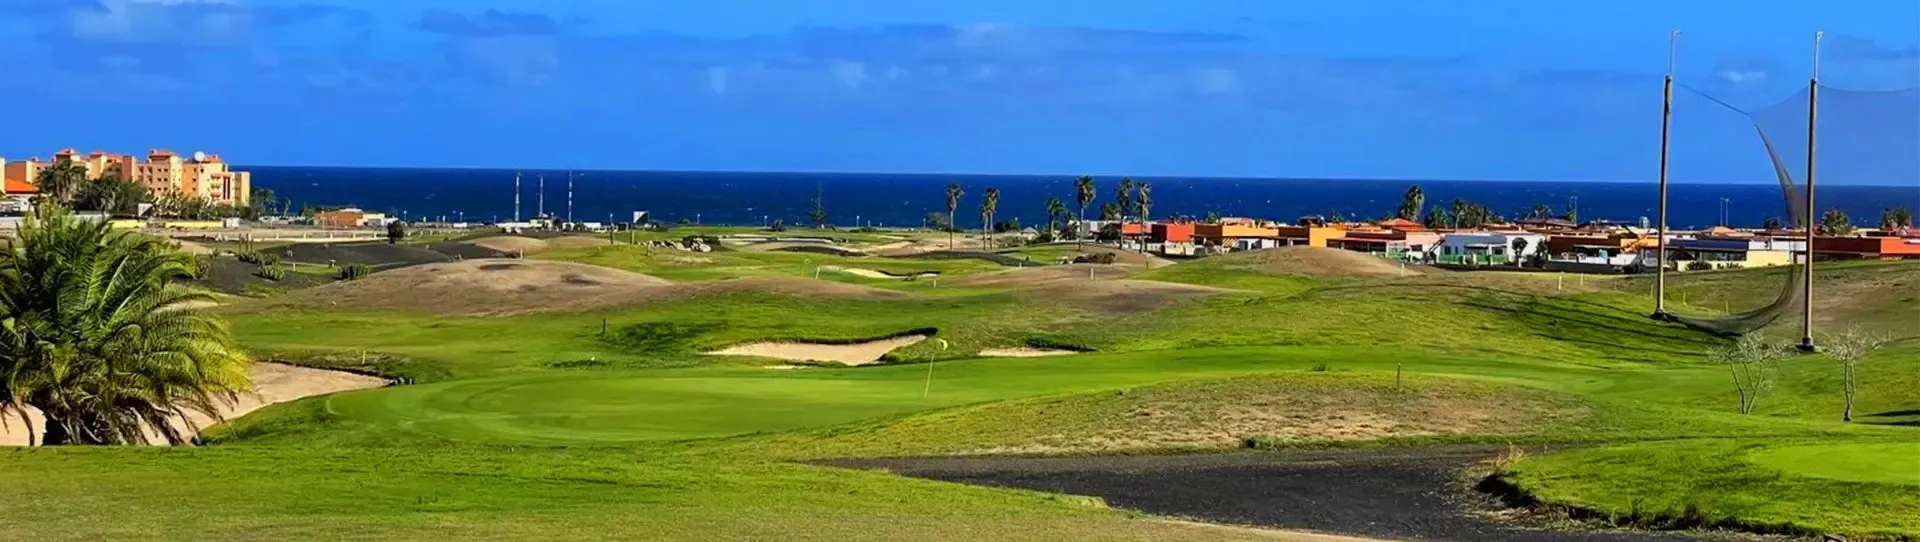 Spain golf courses - Salinas de Antigua Golf Course - Photo 2